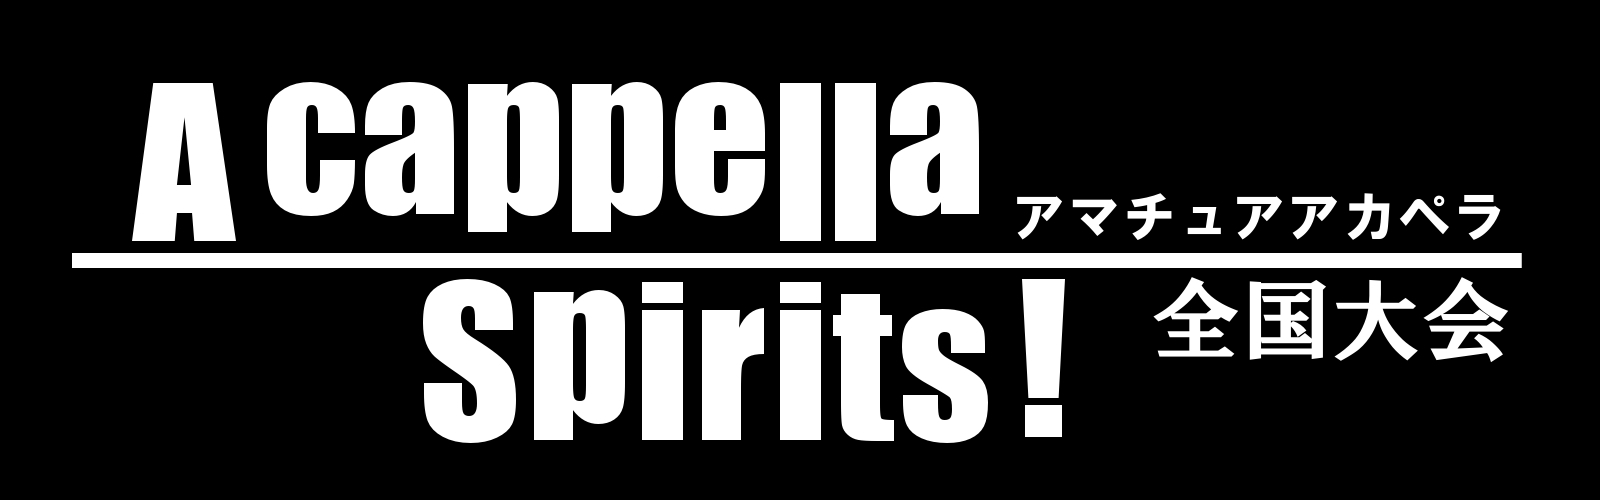 「A cappella Spirits!」